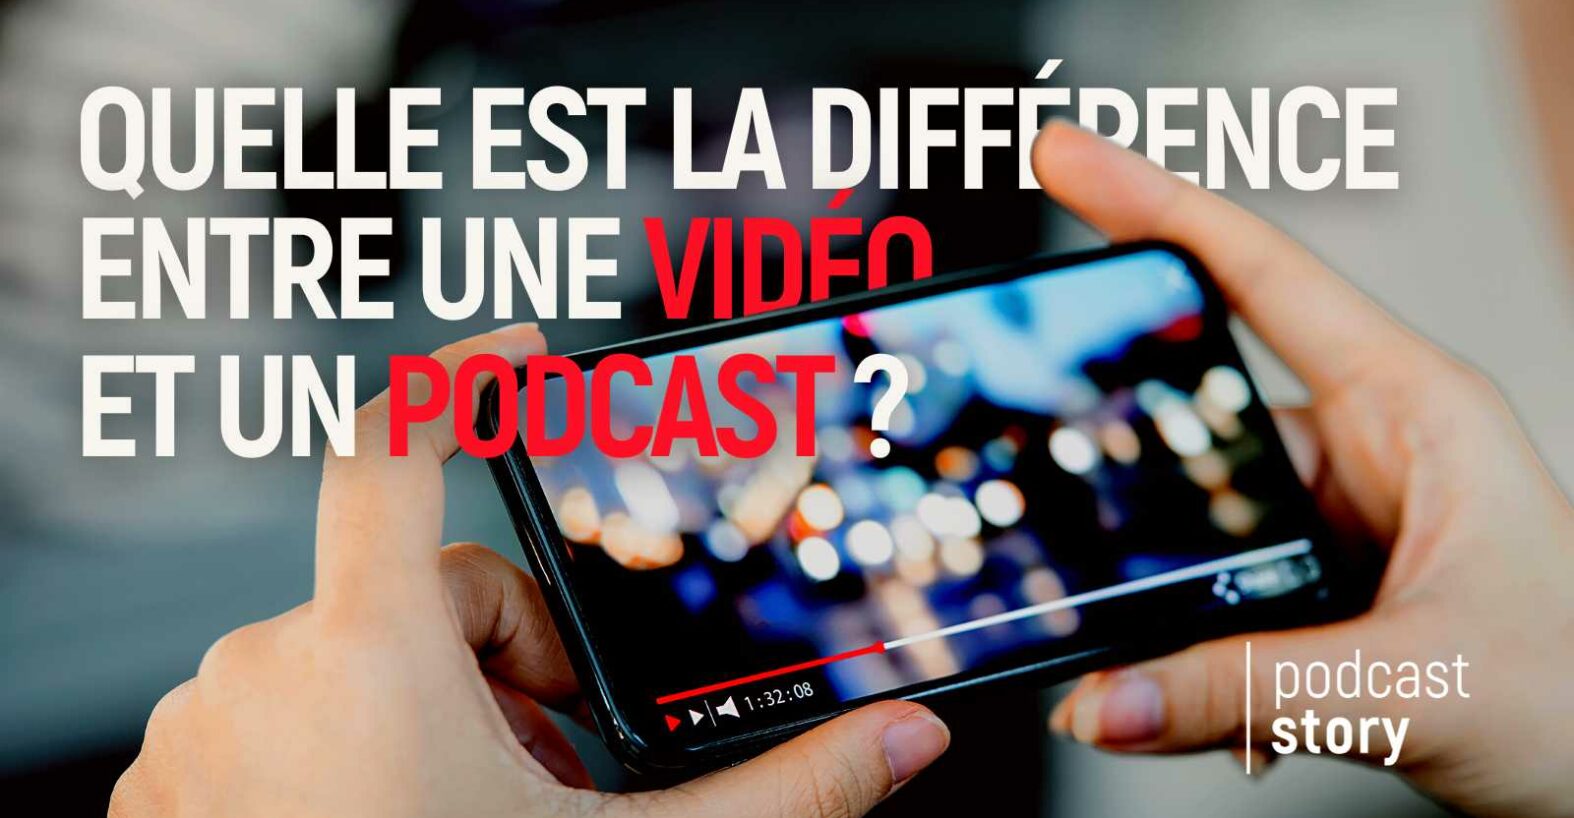 Quelle est la différence entre une vidéo et un podcast ?